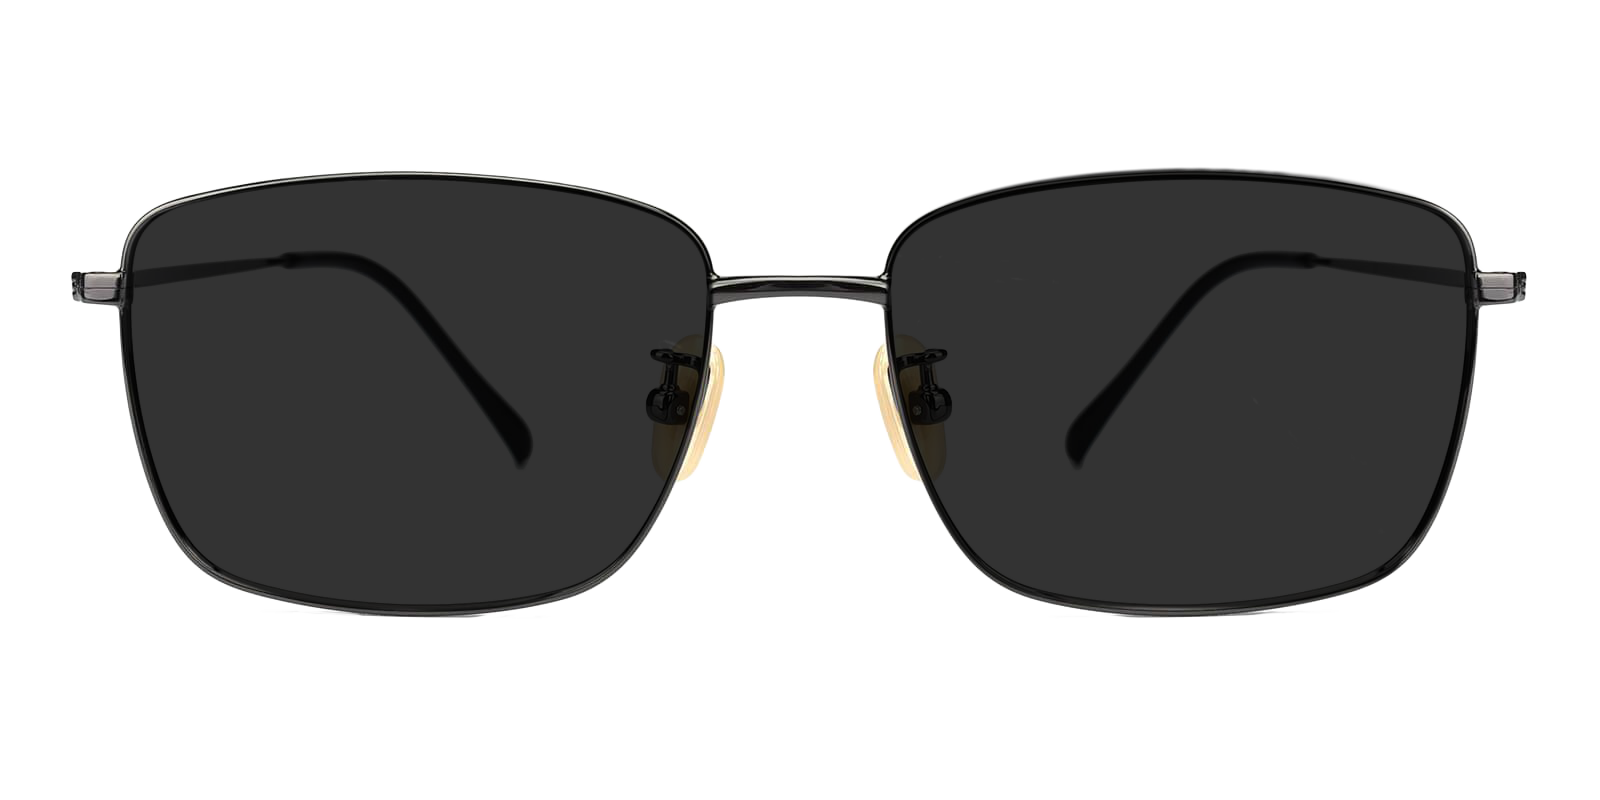 Men's Sunglasses | Sunglasses for Men | ABBE Glasses